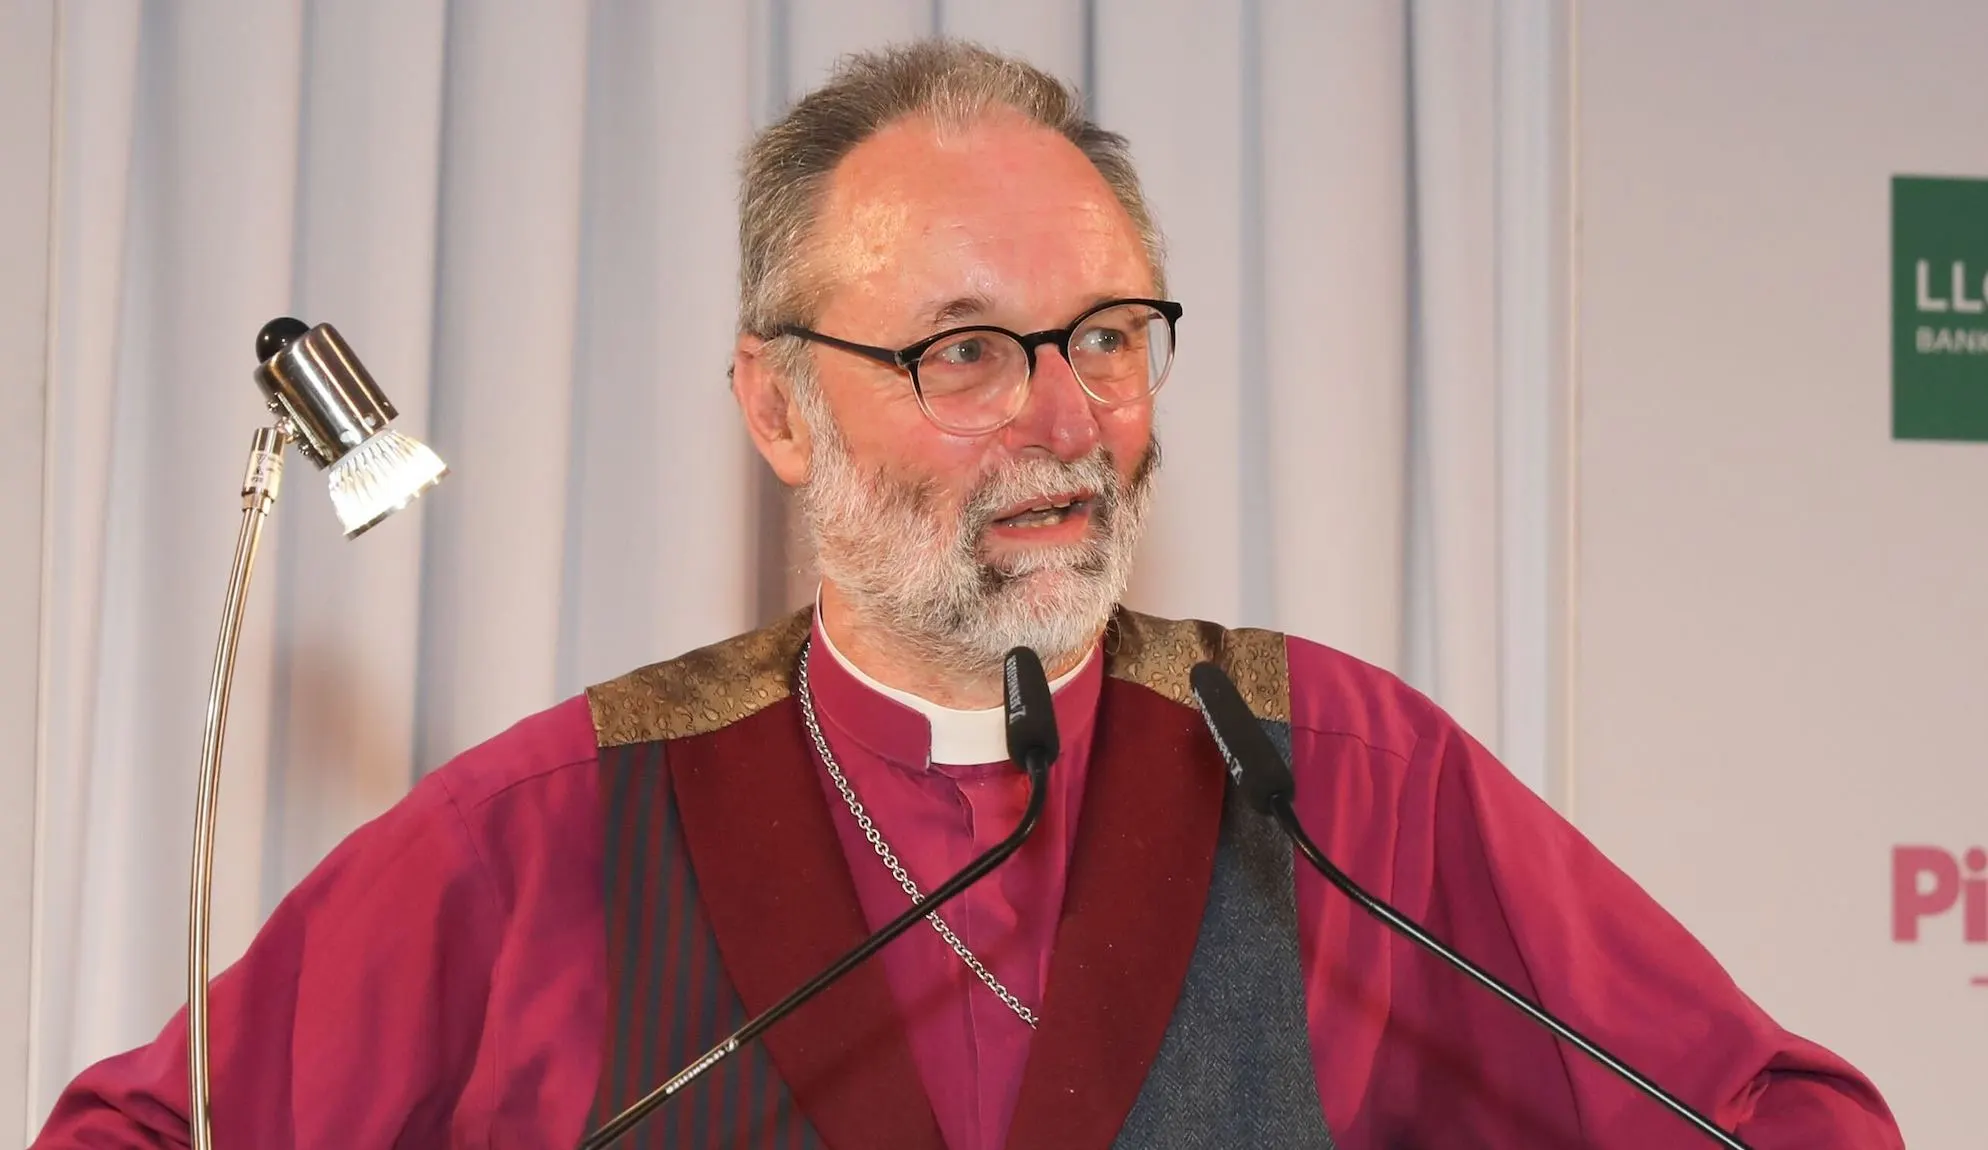 Fallece inesperadamente un obispo pro-LGBTQ que defendió el matrimonio igualitario